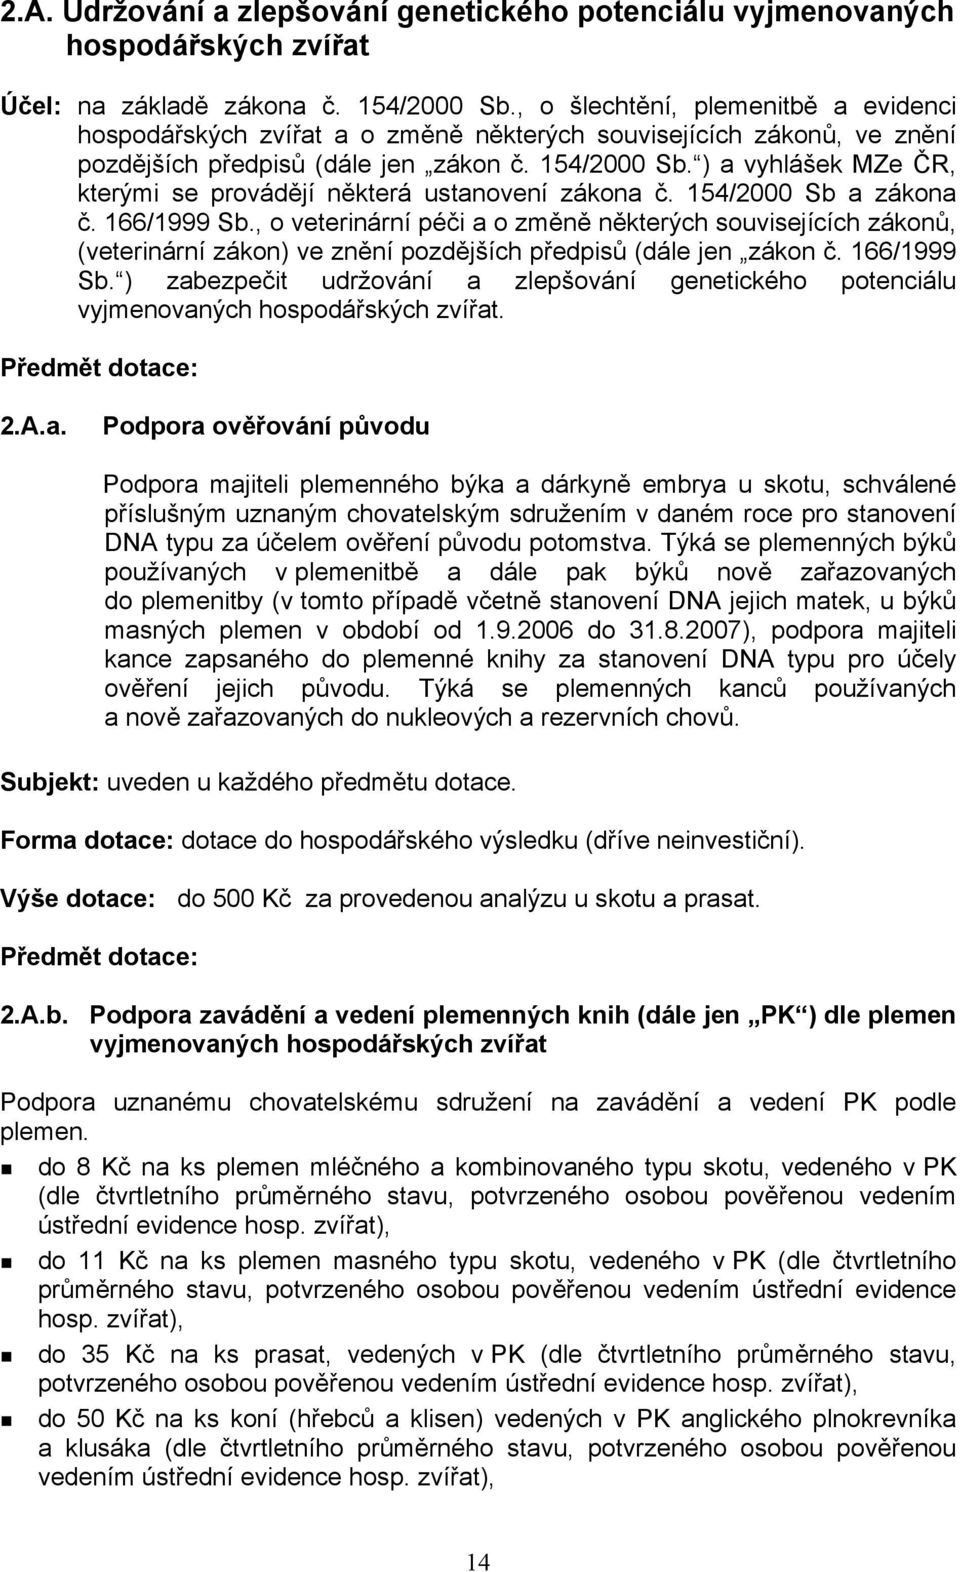 ) a vyhlášek MZe ČR, kterými se provádějí některá ustanovení zákona č. 154/2000 Sb a zákona č. 166/1999 Sb.